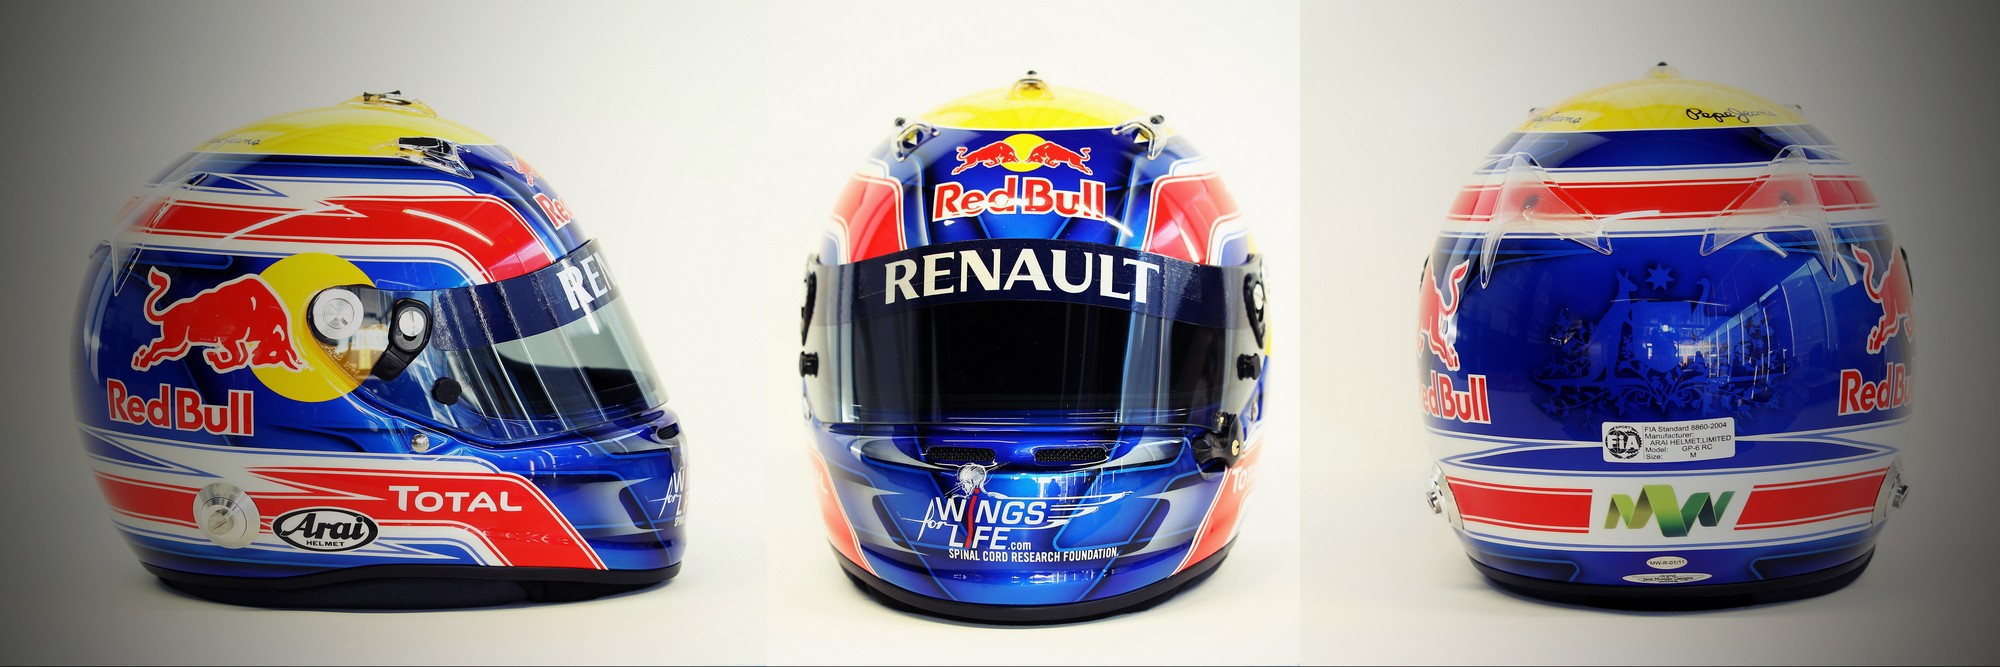 Шлем Марка Уэббера на сезон 2011 года | 2011 helmet of Mark Webber